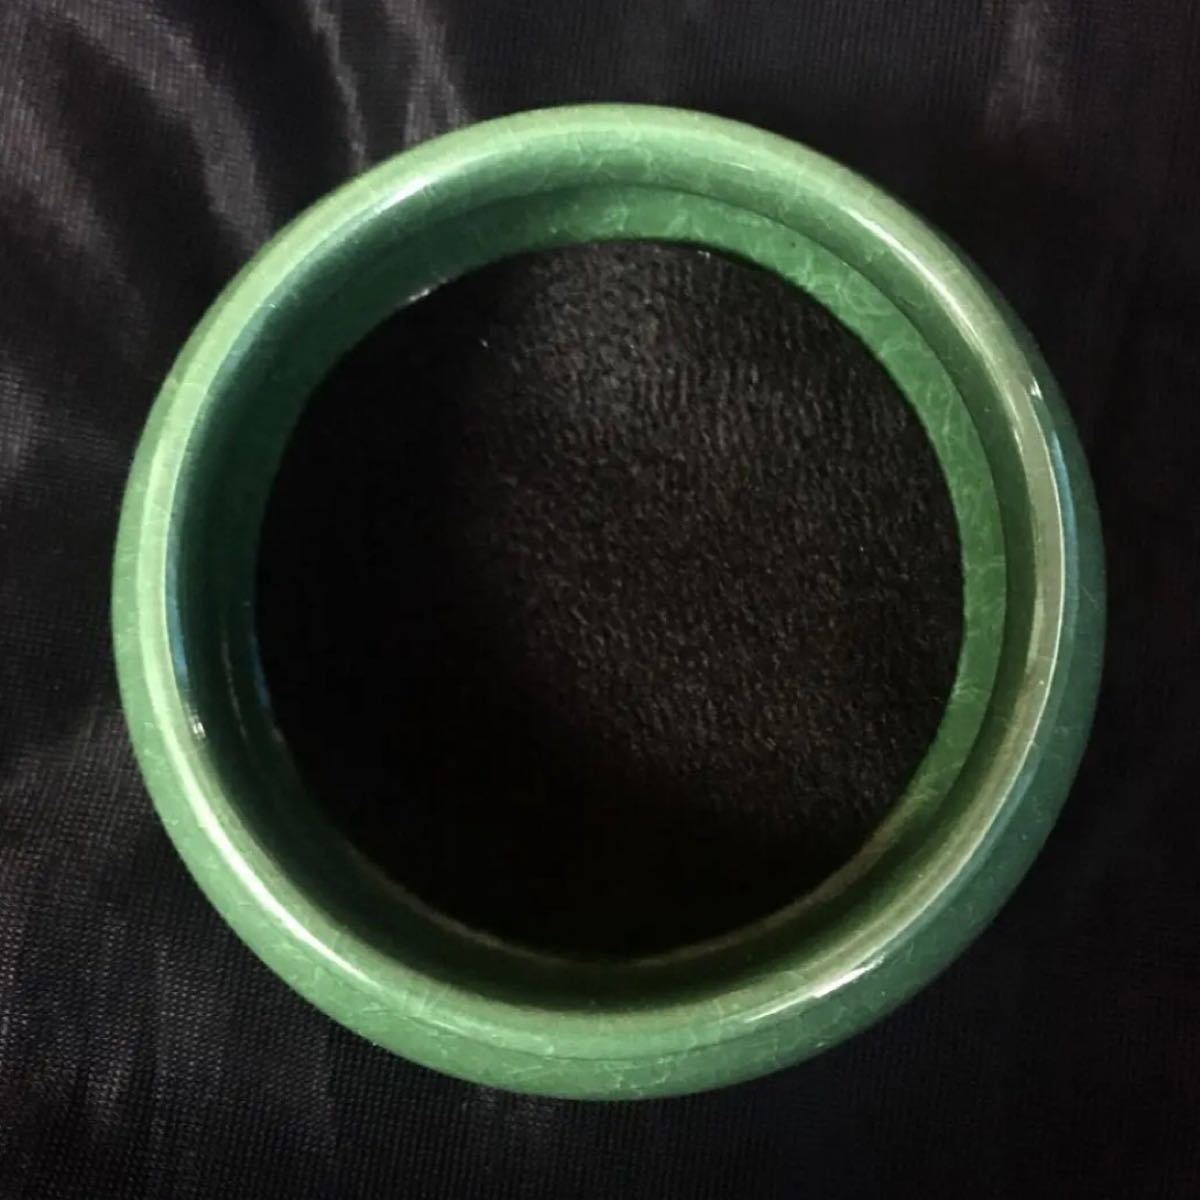 【即購入OK!!】香炉お香入れ陶器グリーンオシャレインテリア丸型香炉緑